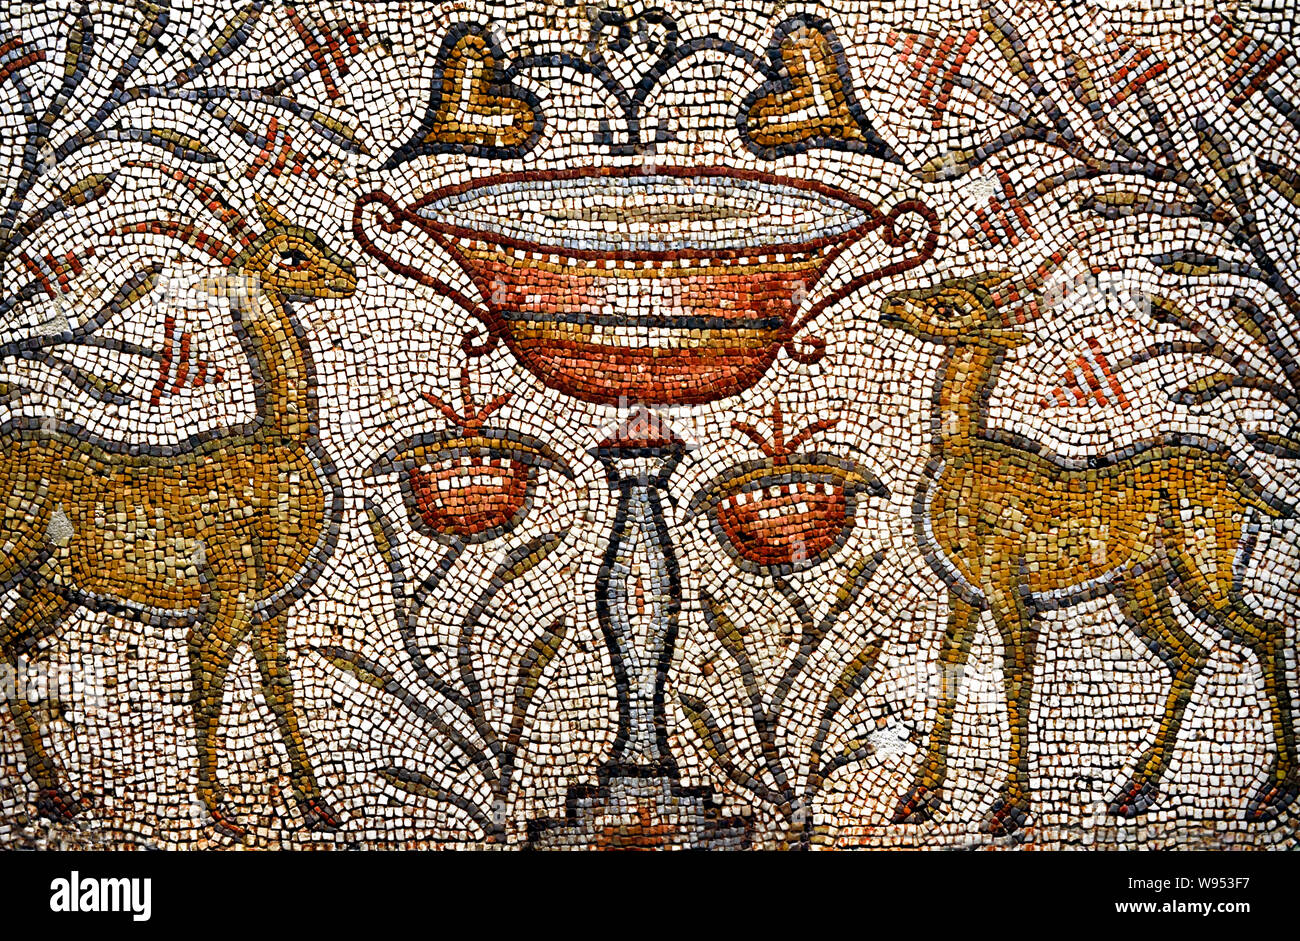 Gazellen mit einer Vase gegenübergestellt - Östliches Mittelmeer Mosaik-Würfel aus Marmor und Kalkstein 6. Jahrhundert AD Stockfoto